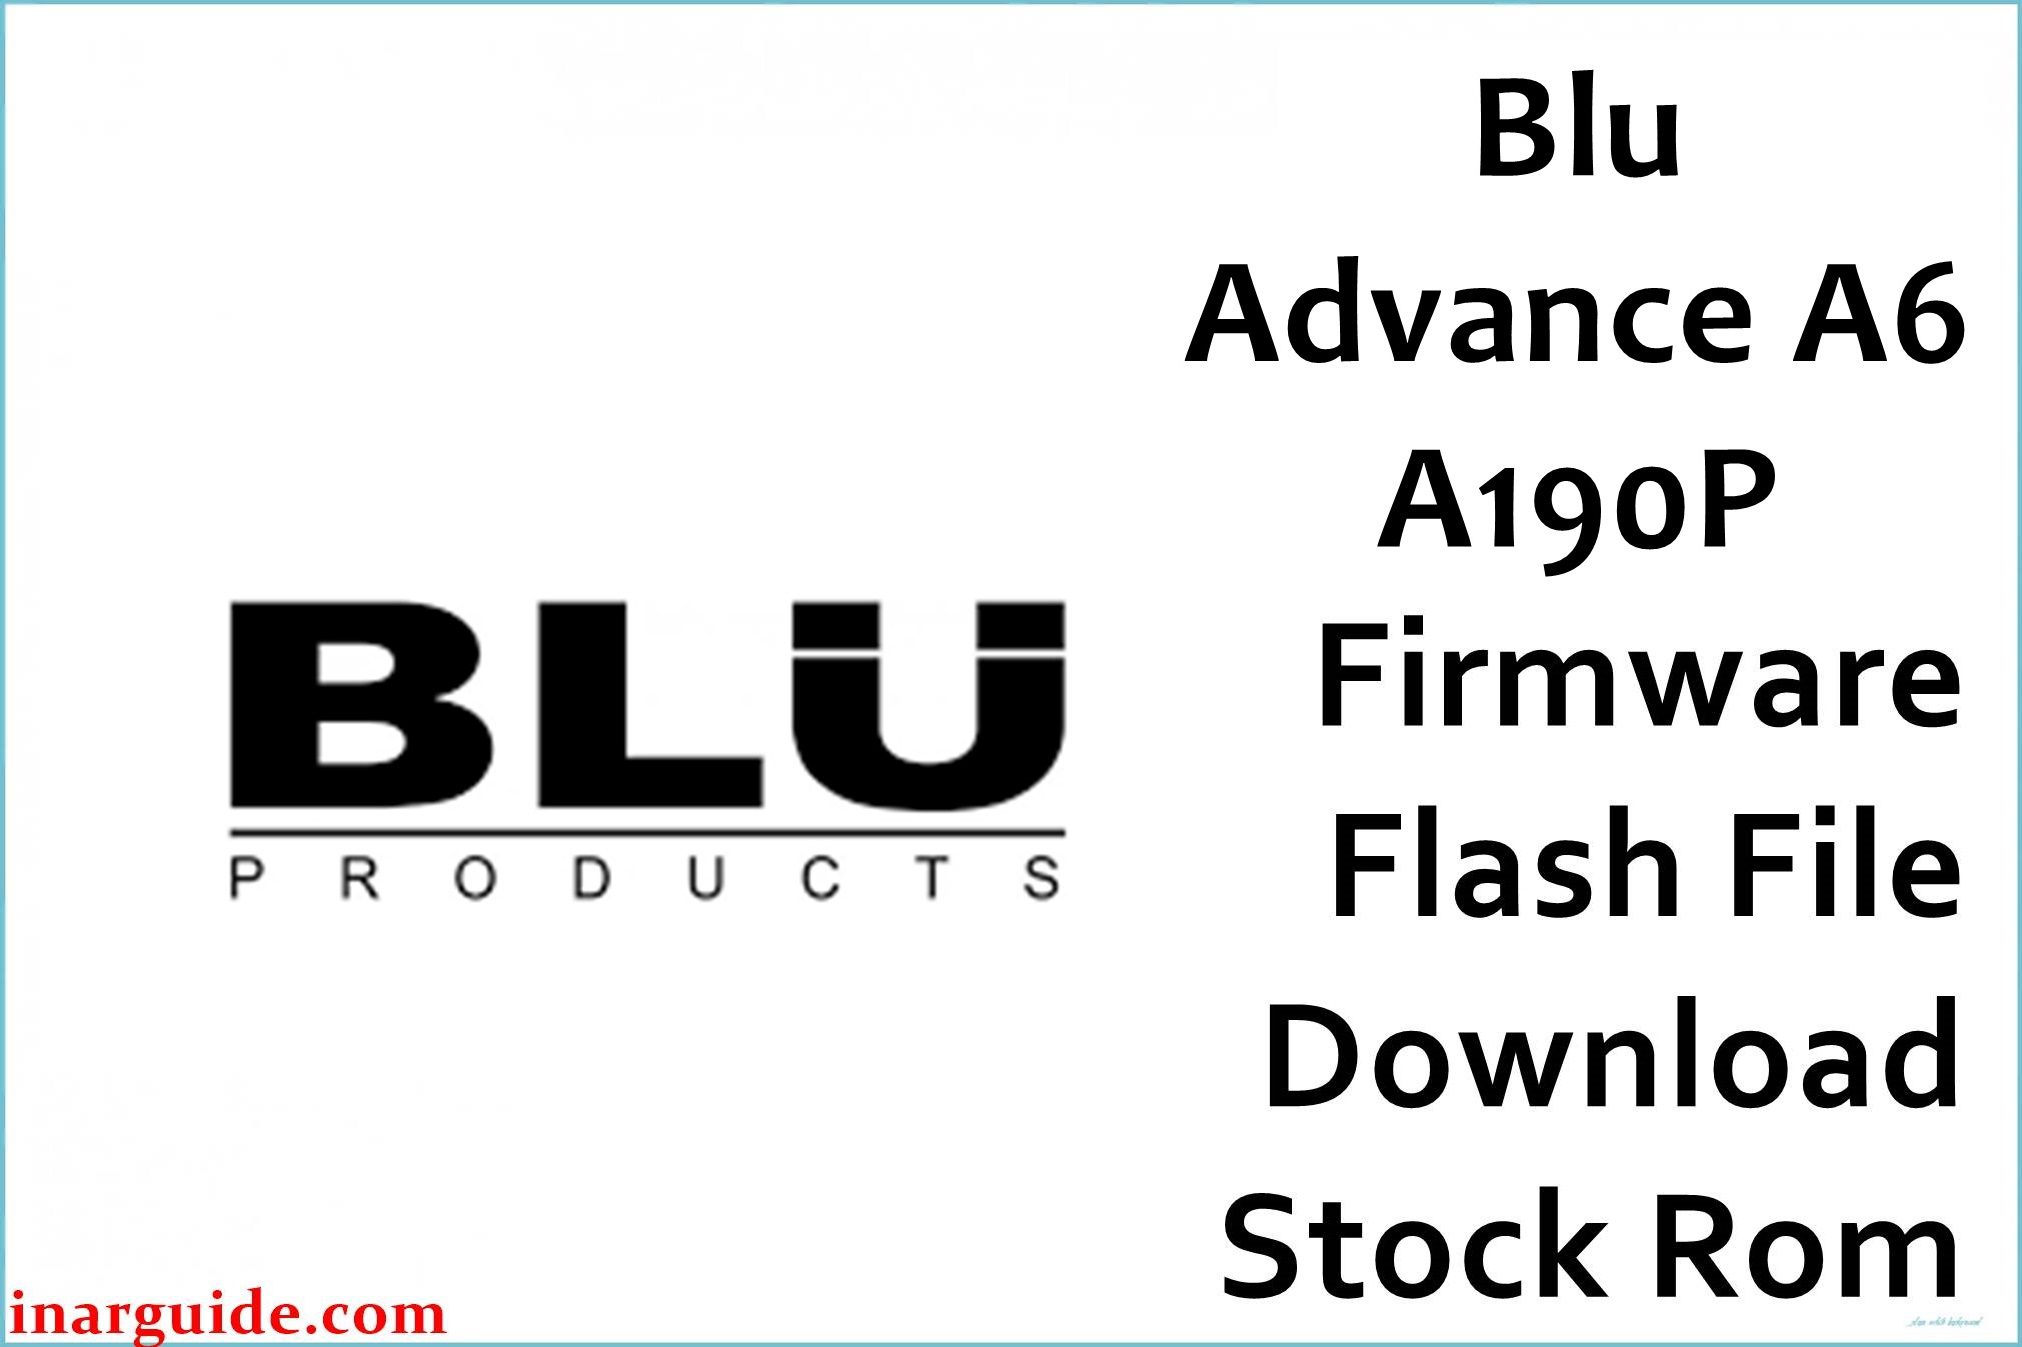 Blu Advance A6 A190P